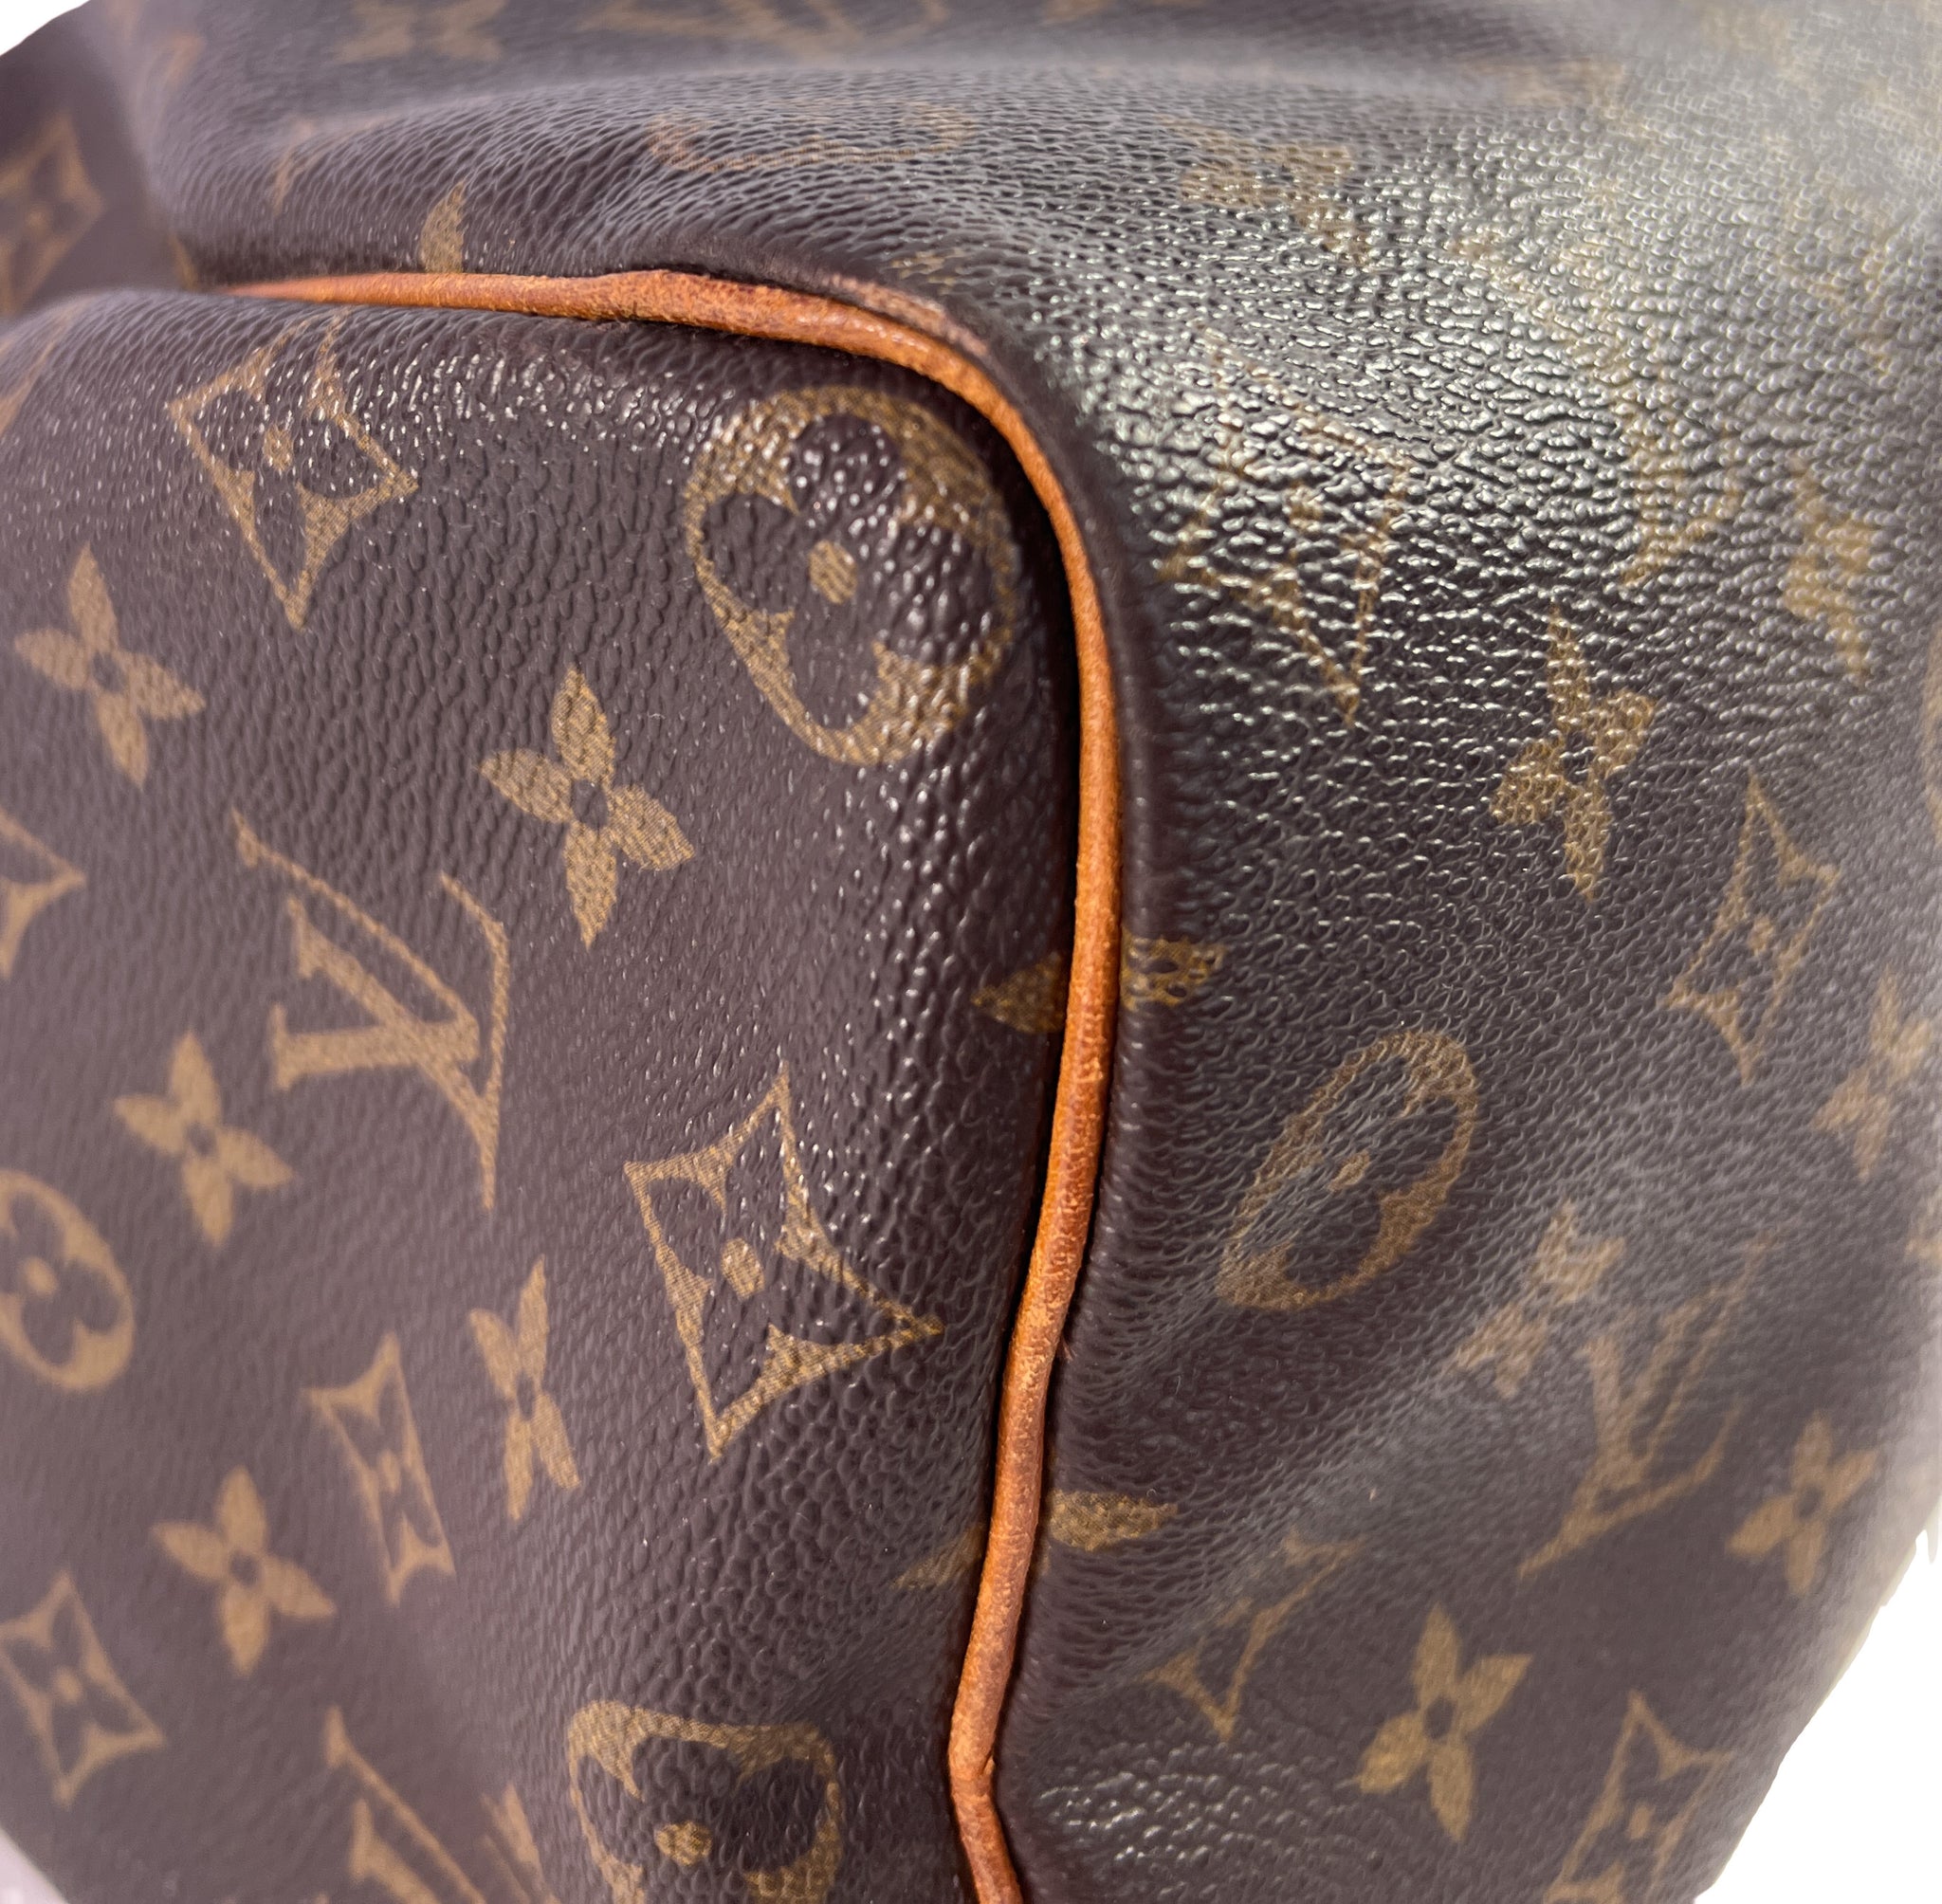 Louis Vuitton vintage 1988 monogram speedy 35 – My Girlfriend's Wardrobe LLC